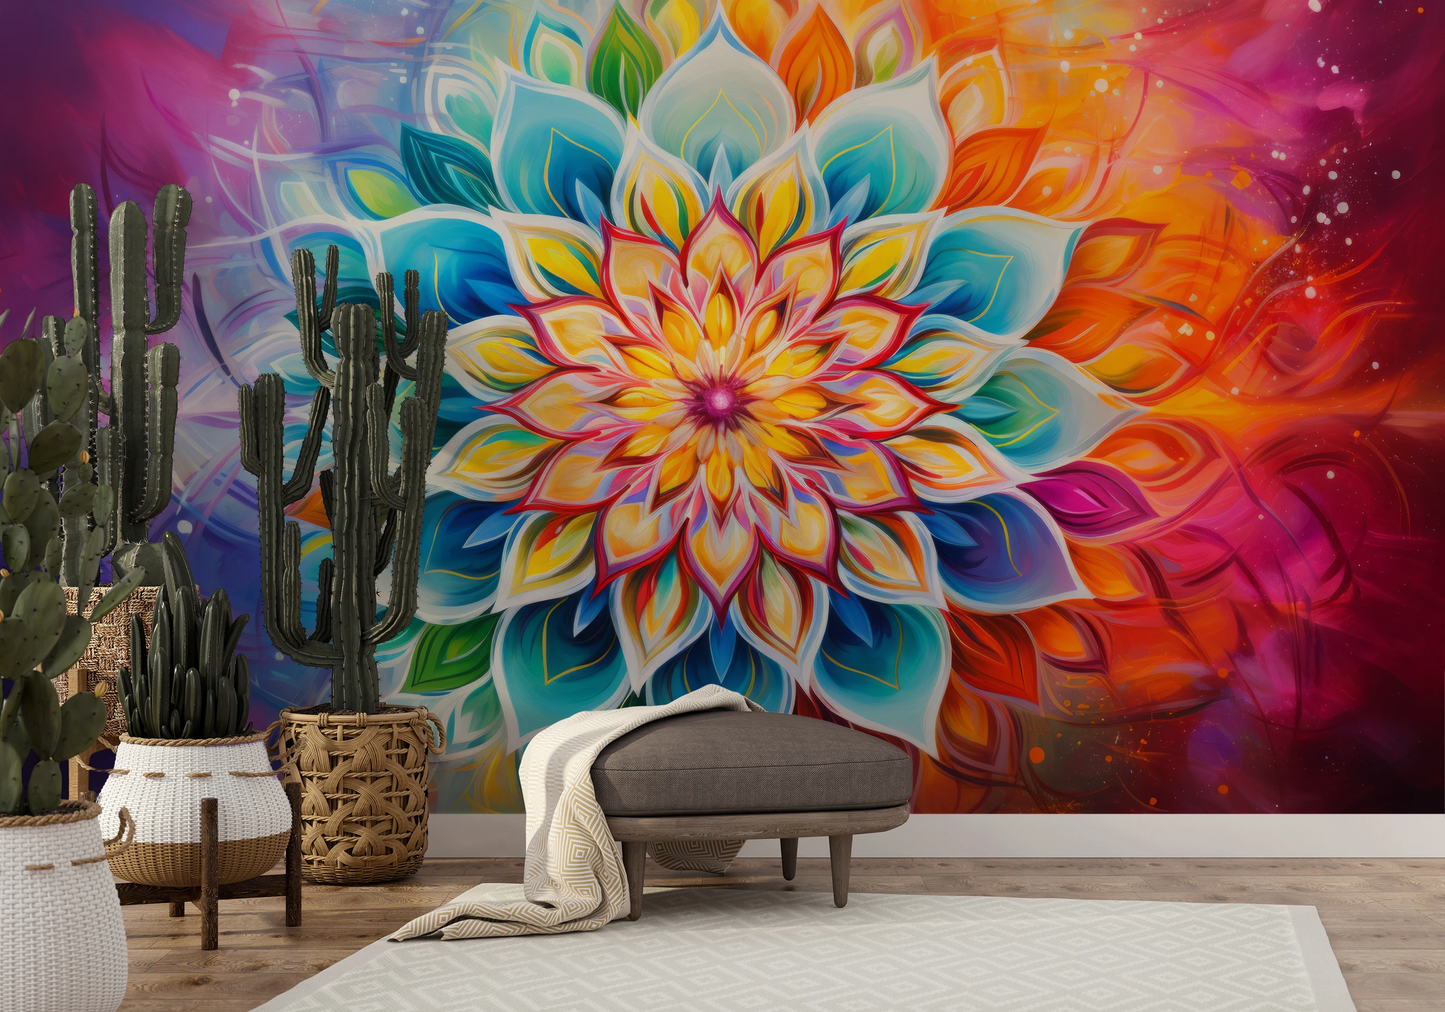 Fototapeta o nazwie Vibrant Lotus użyta w aranzacji wnętrza.